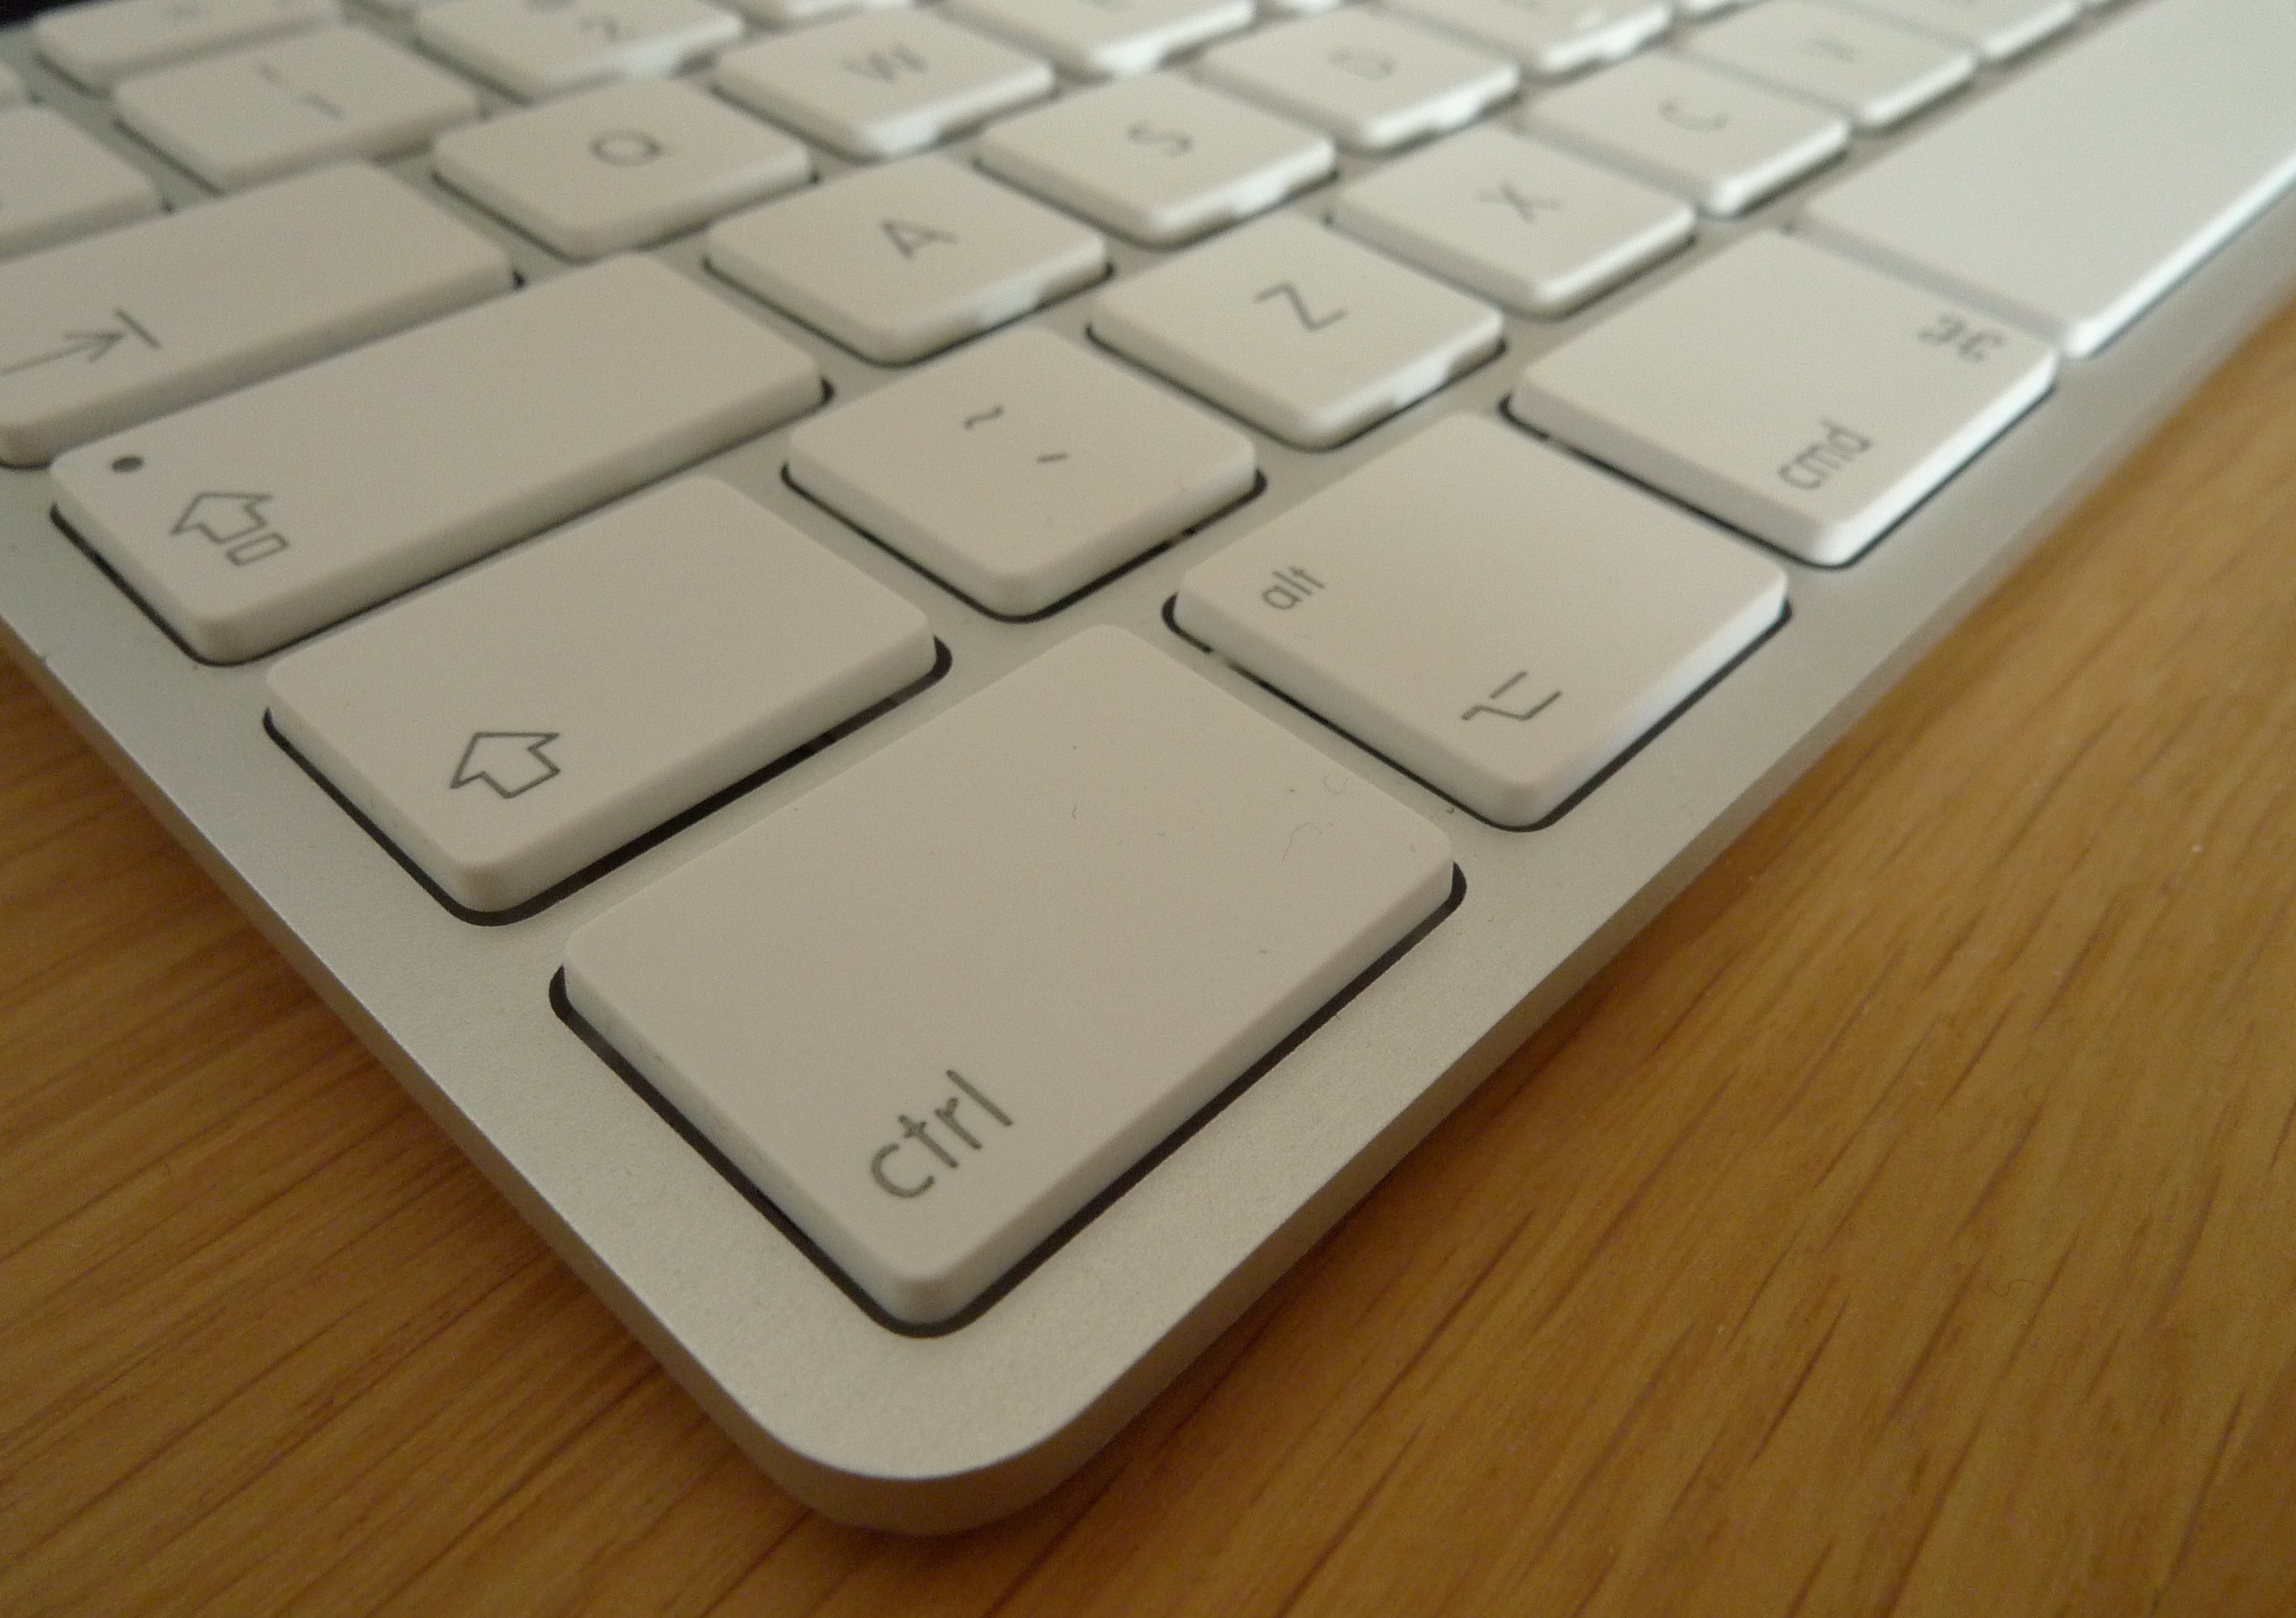 10 самых полезных горячих клавиш macOS для новичков